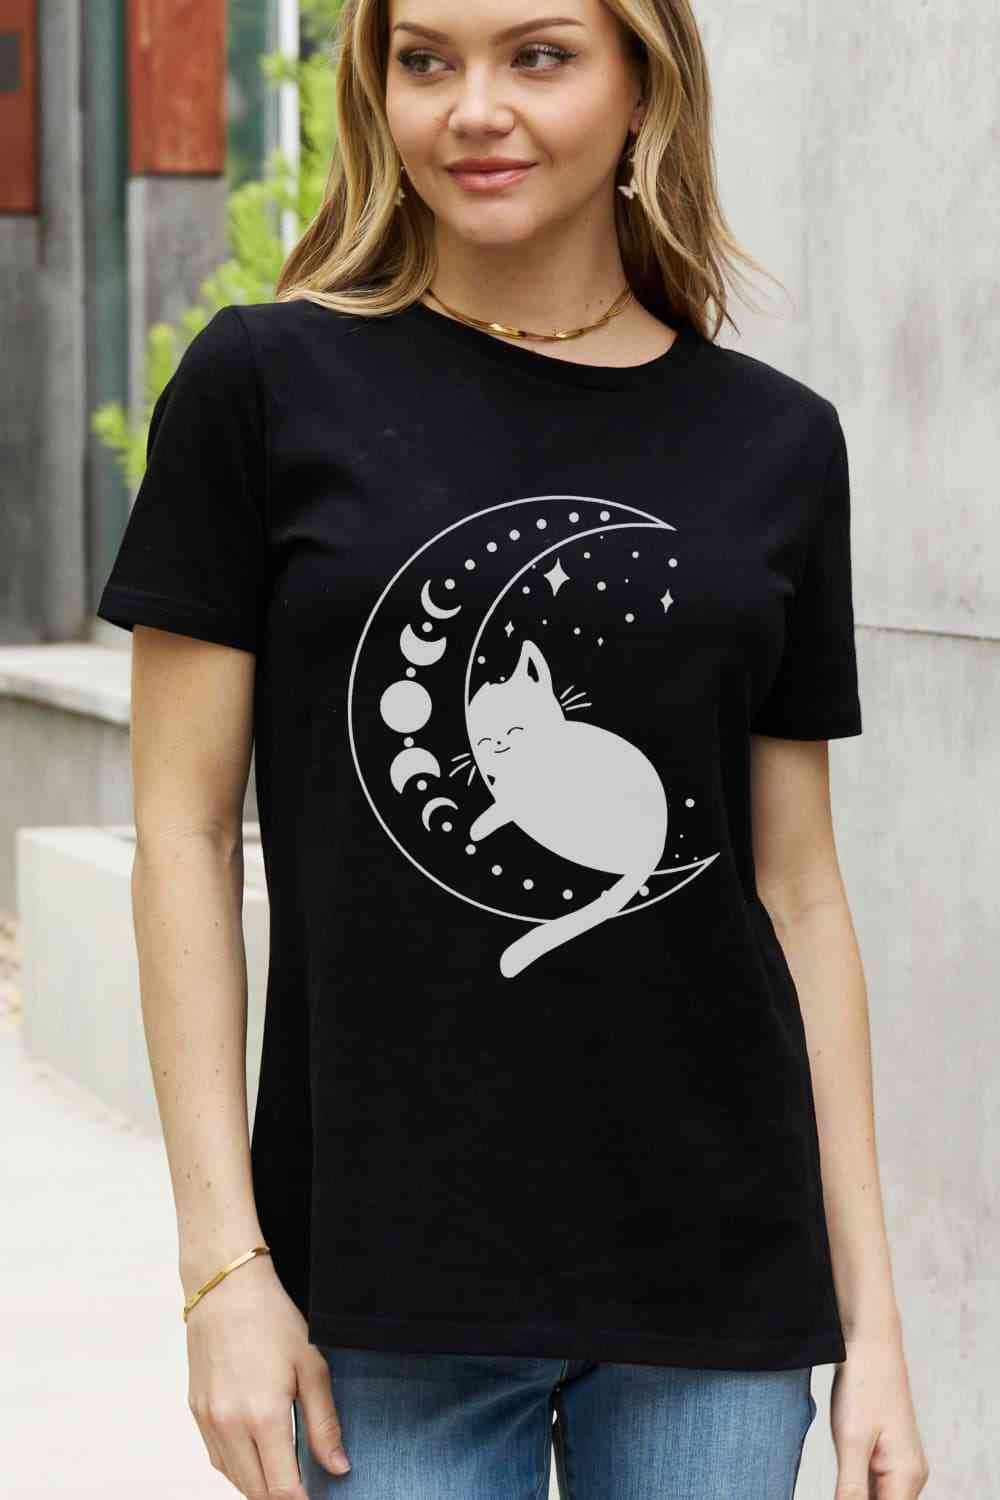 Camiseta de algodón con estampado de gato y luna de tamaño completo de Simply Love